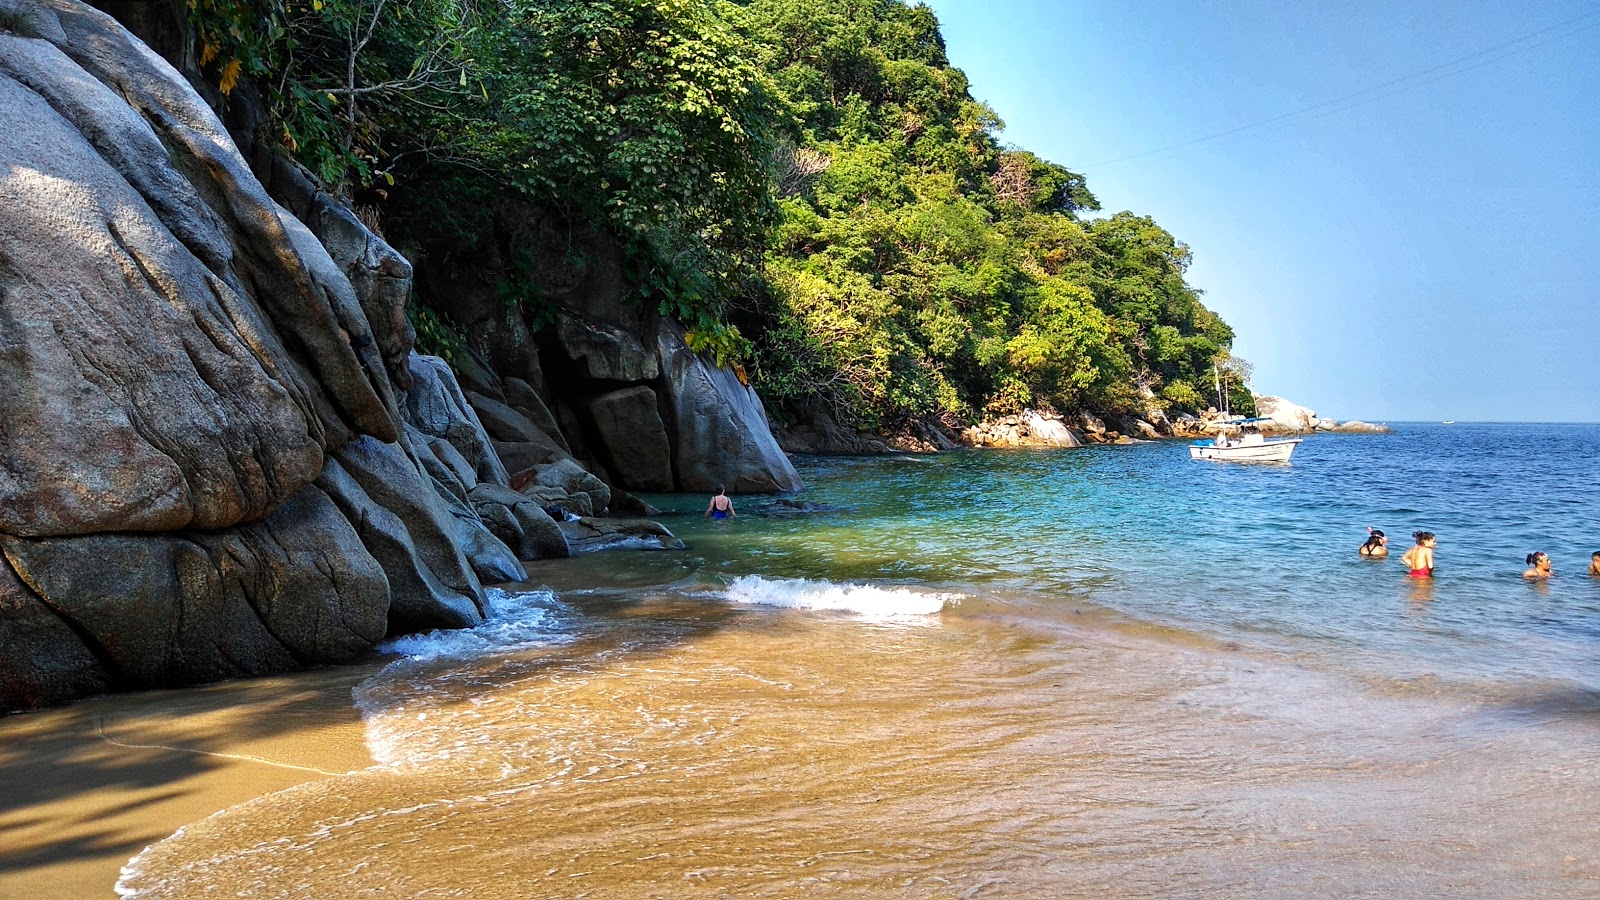 Colomitos beach'in fotoğrafı doğal alan içinde bulunmaktadır